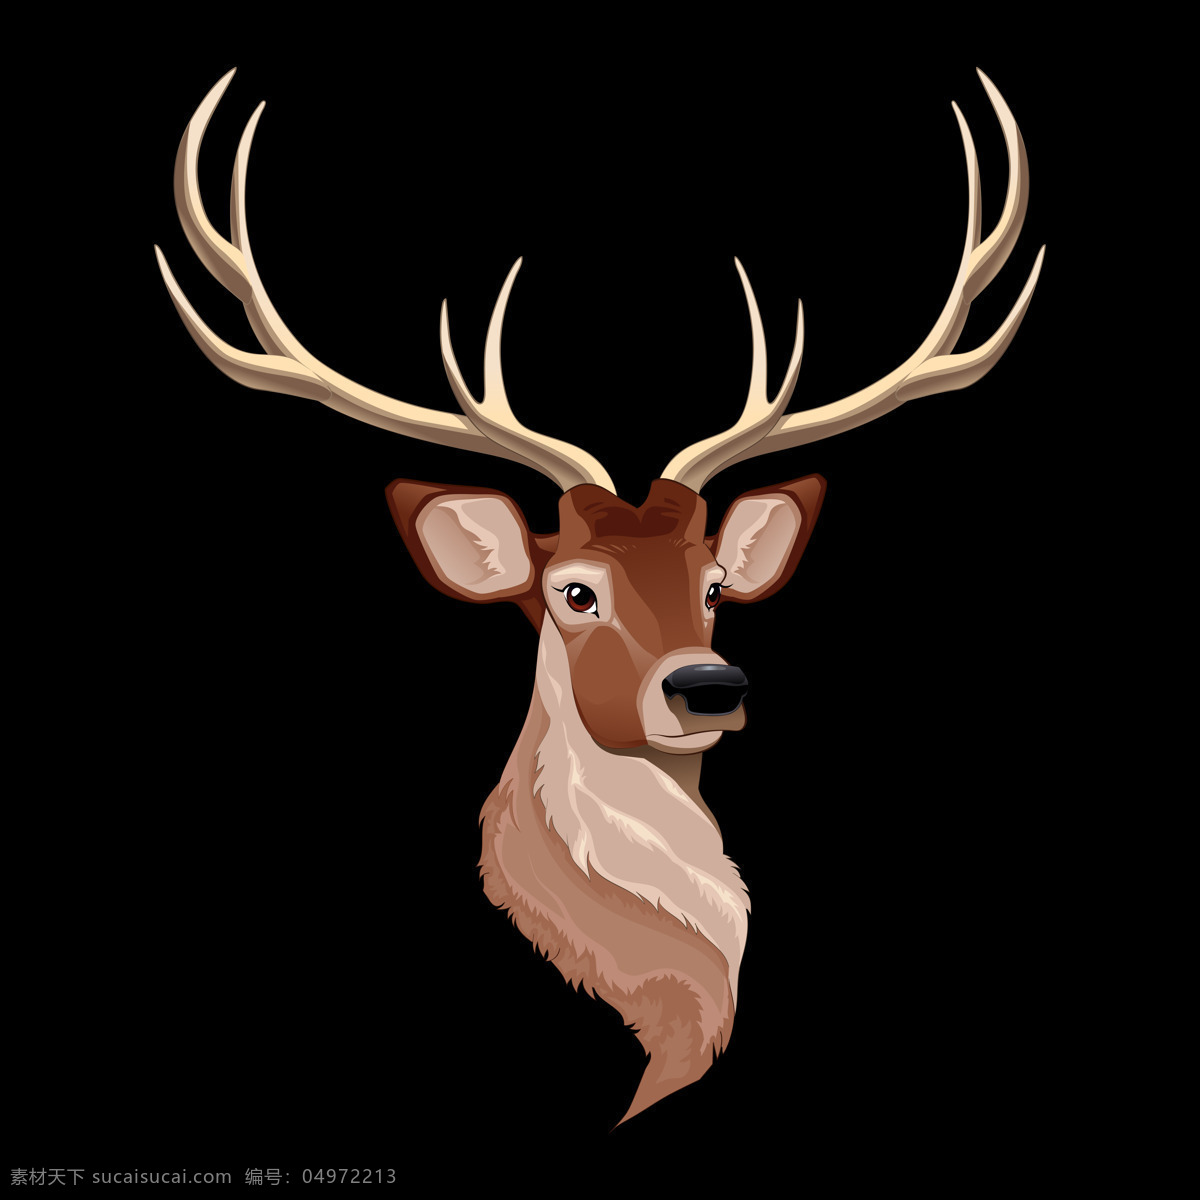 透明底鹿 鹿图片 卡通鹿 动物 卡通 梅花鹿 麋鹿图片 png图片 鹿茸 鹿角 鹿剪影